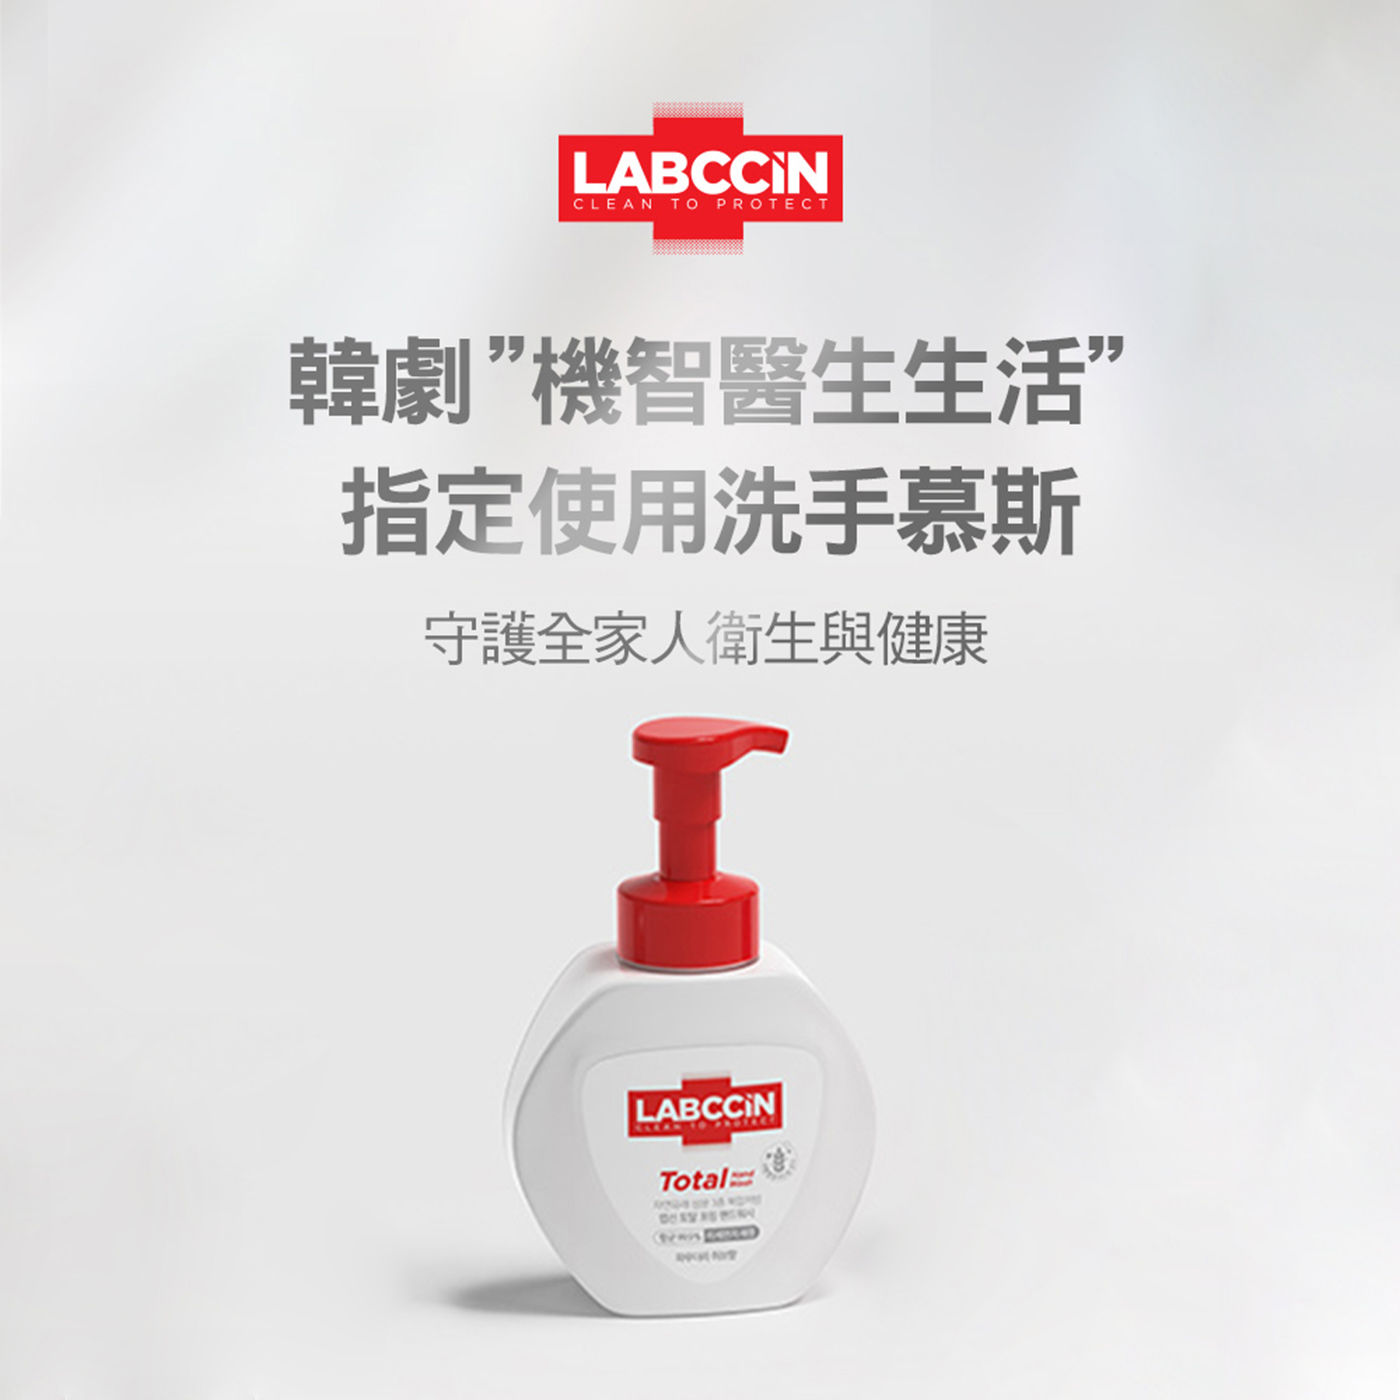 LABCCIN 全效洗手慕斯 韓劇機智醫生生活指定使用洗手慕斯，守護全家人衛生與健康